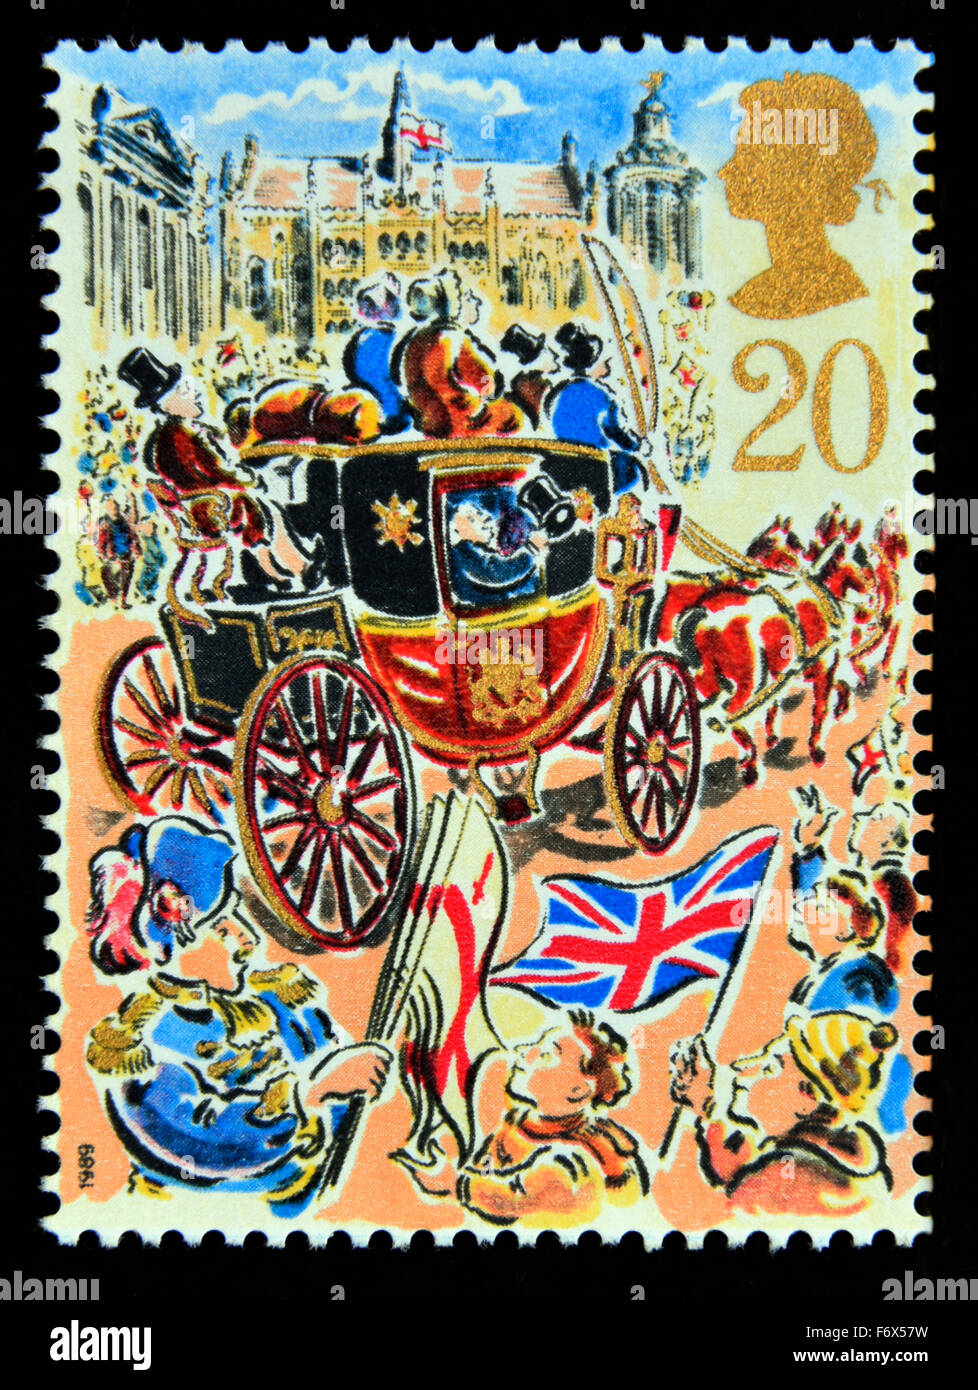 Timbre-poste. La Grande-Bretagne. La reine Elizabeth II. 1989. Lord Mayor's Show, Londres. La Poste. 20p. Banque D'Images